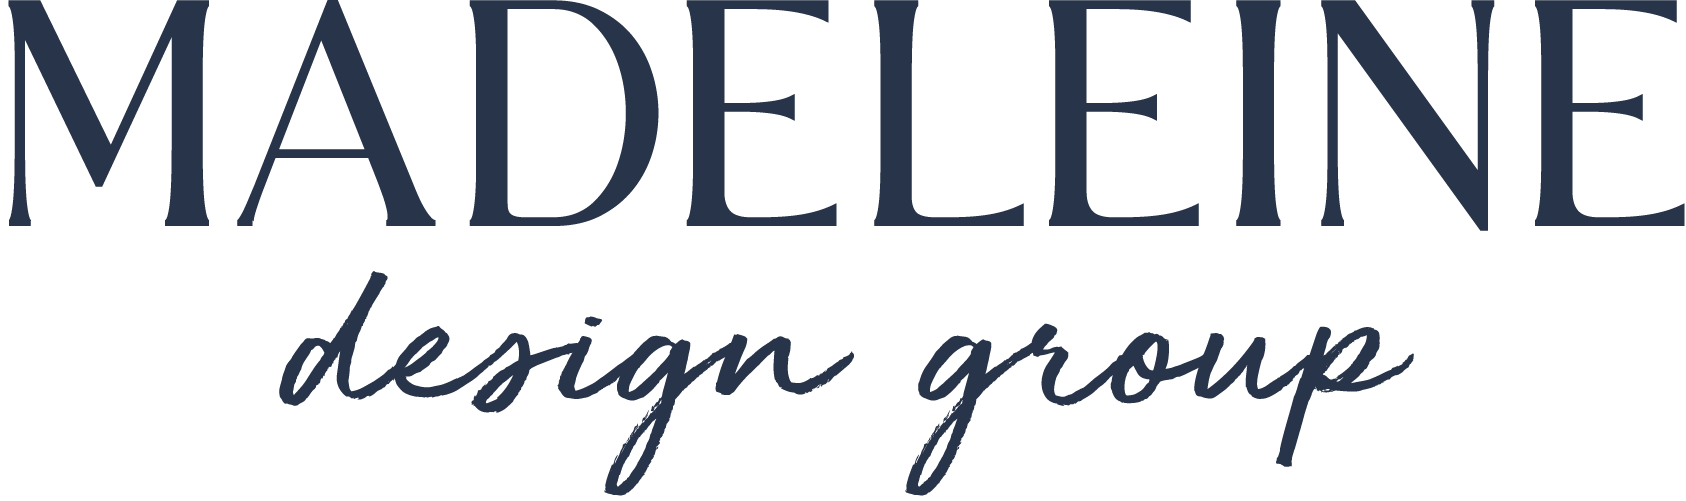 Madeleine Design Group Logo